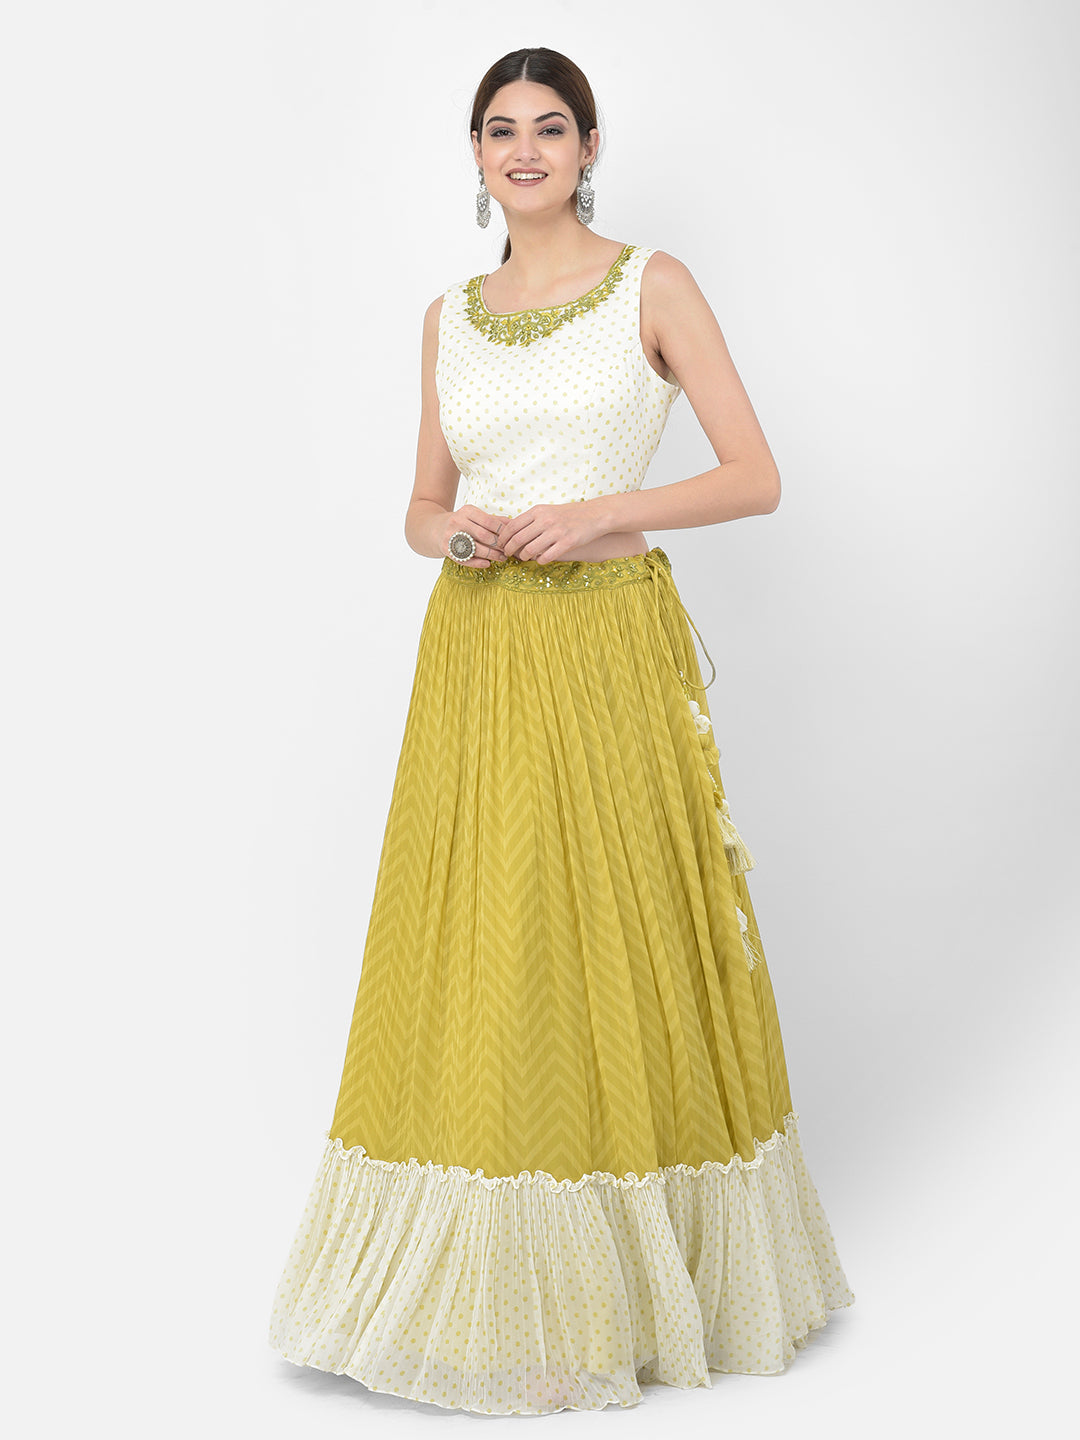 Neeru's Green Color Georgette Fabric Salwar Kameez